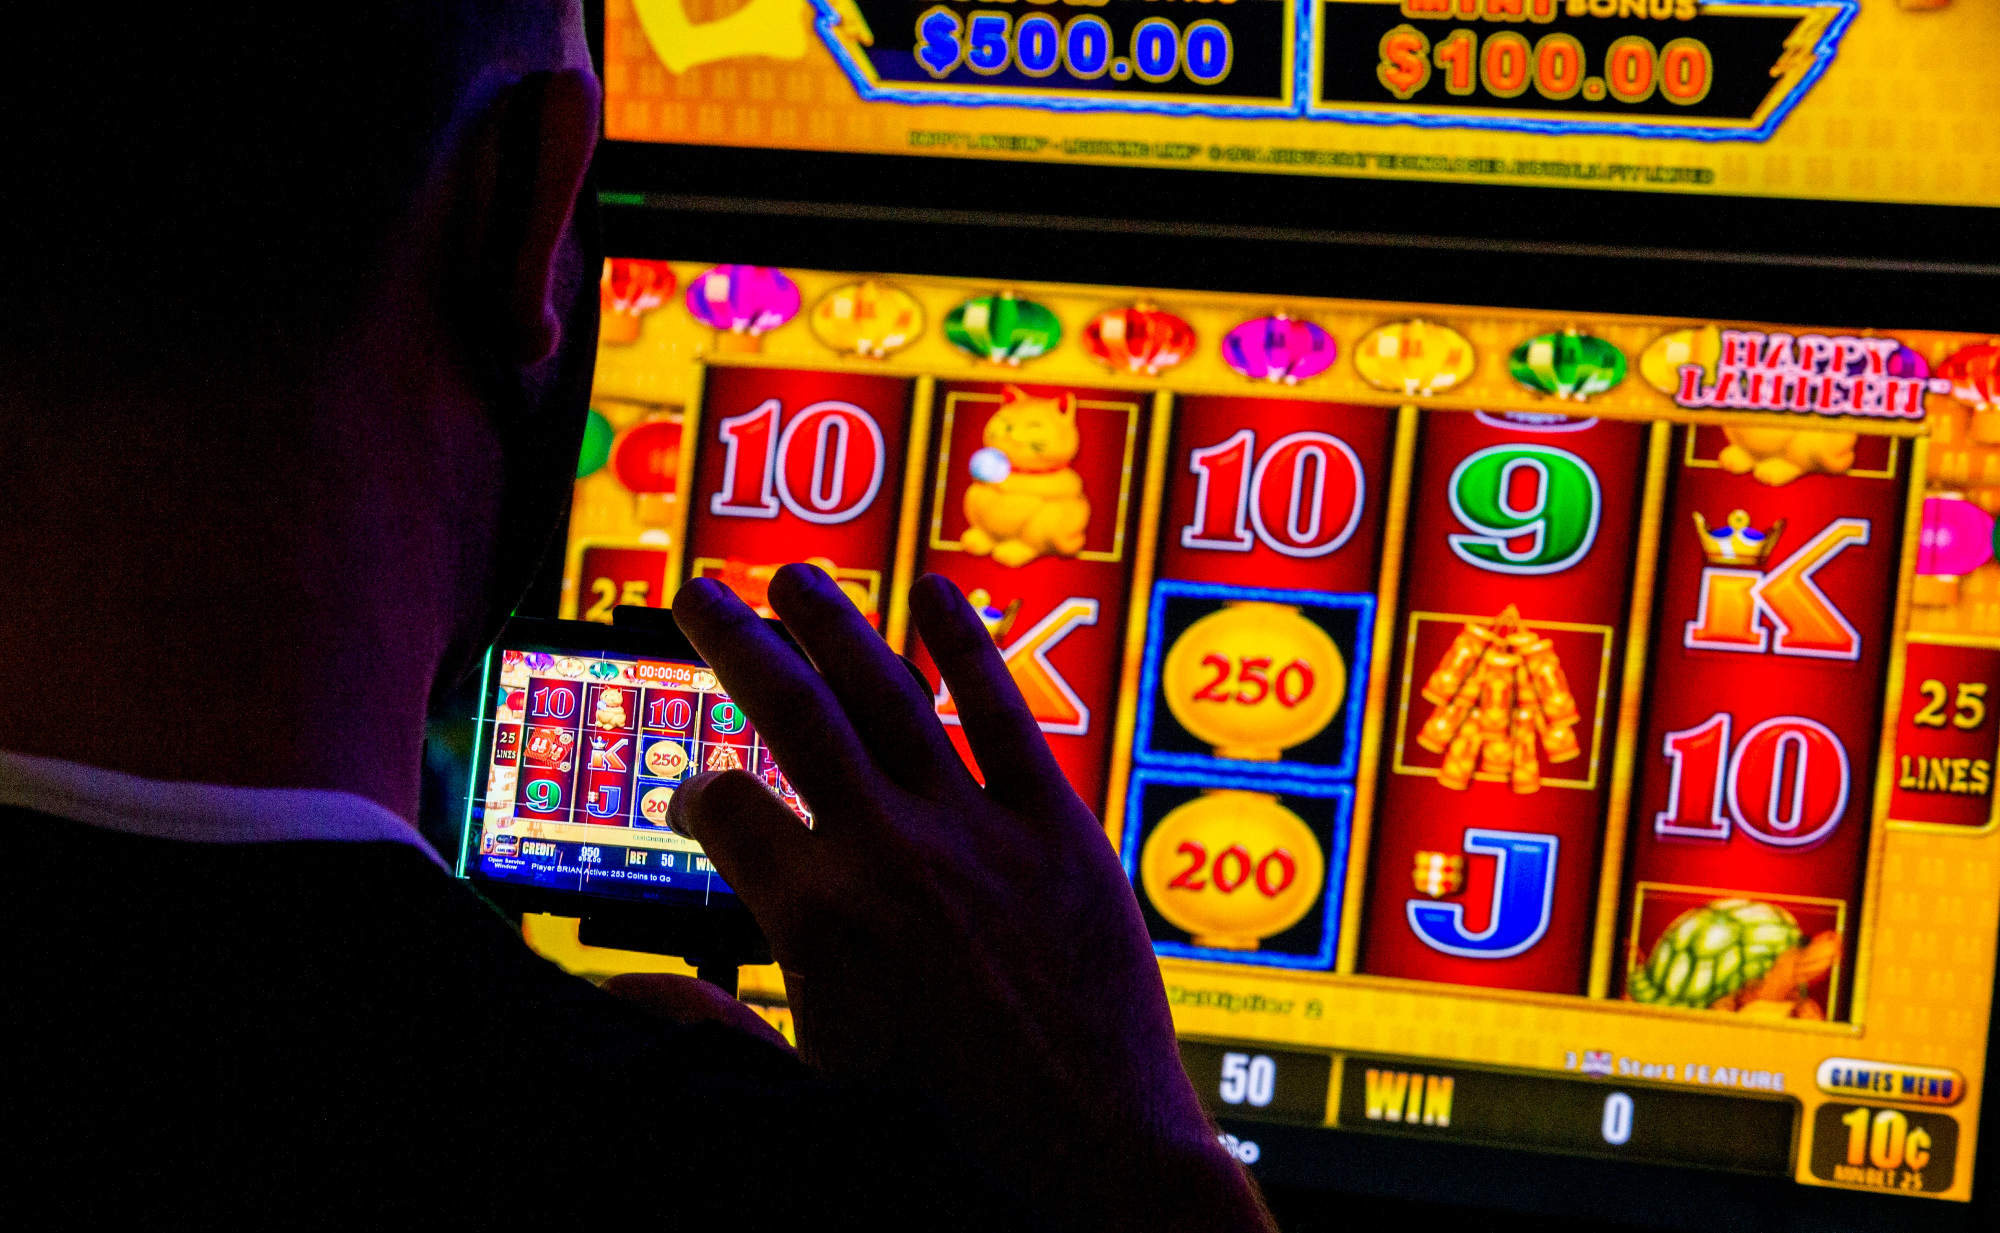 Bermain Slot di Kasino Online bisa menjadi waktu luang yang menyenangkan